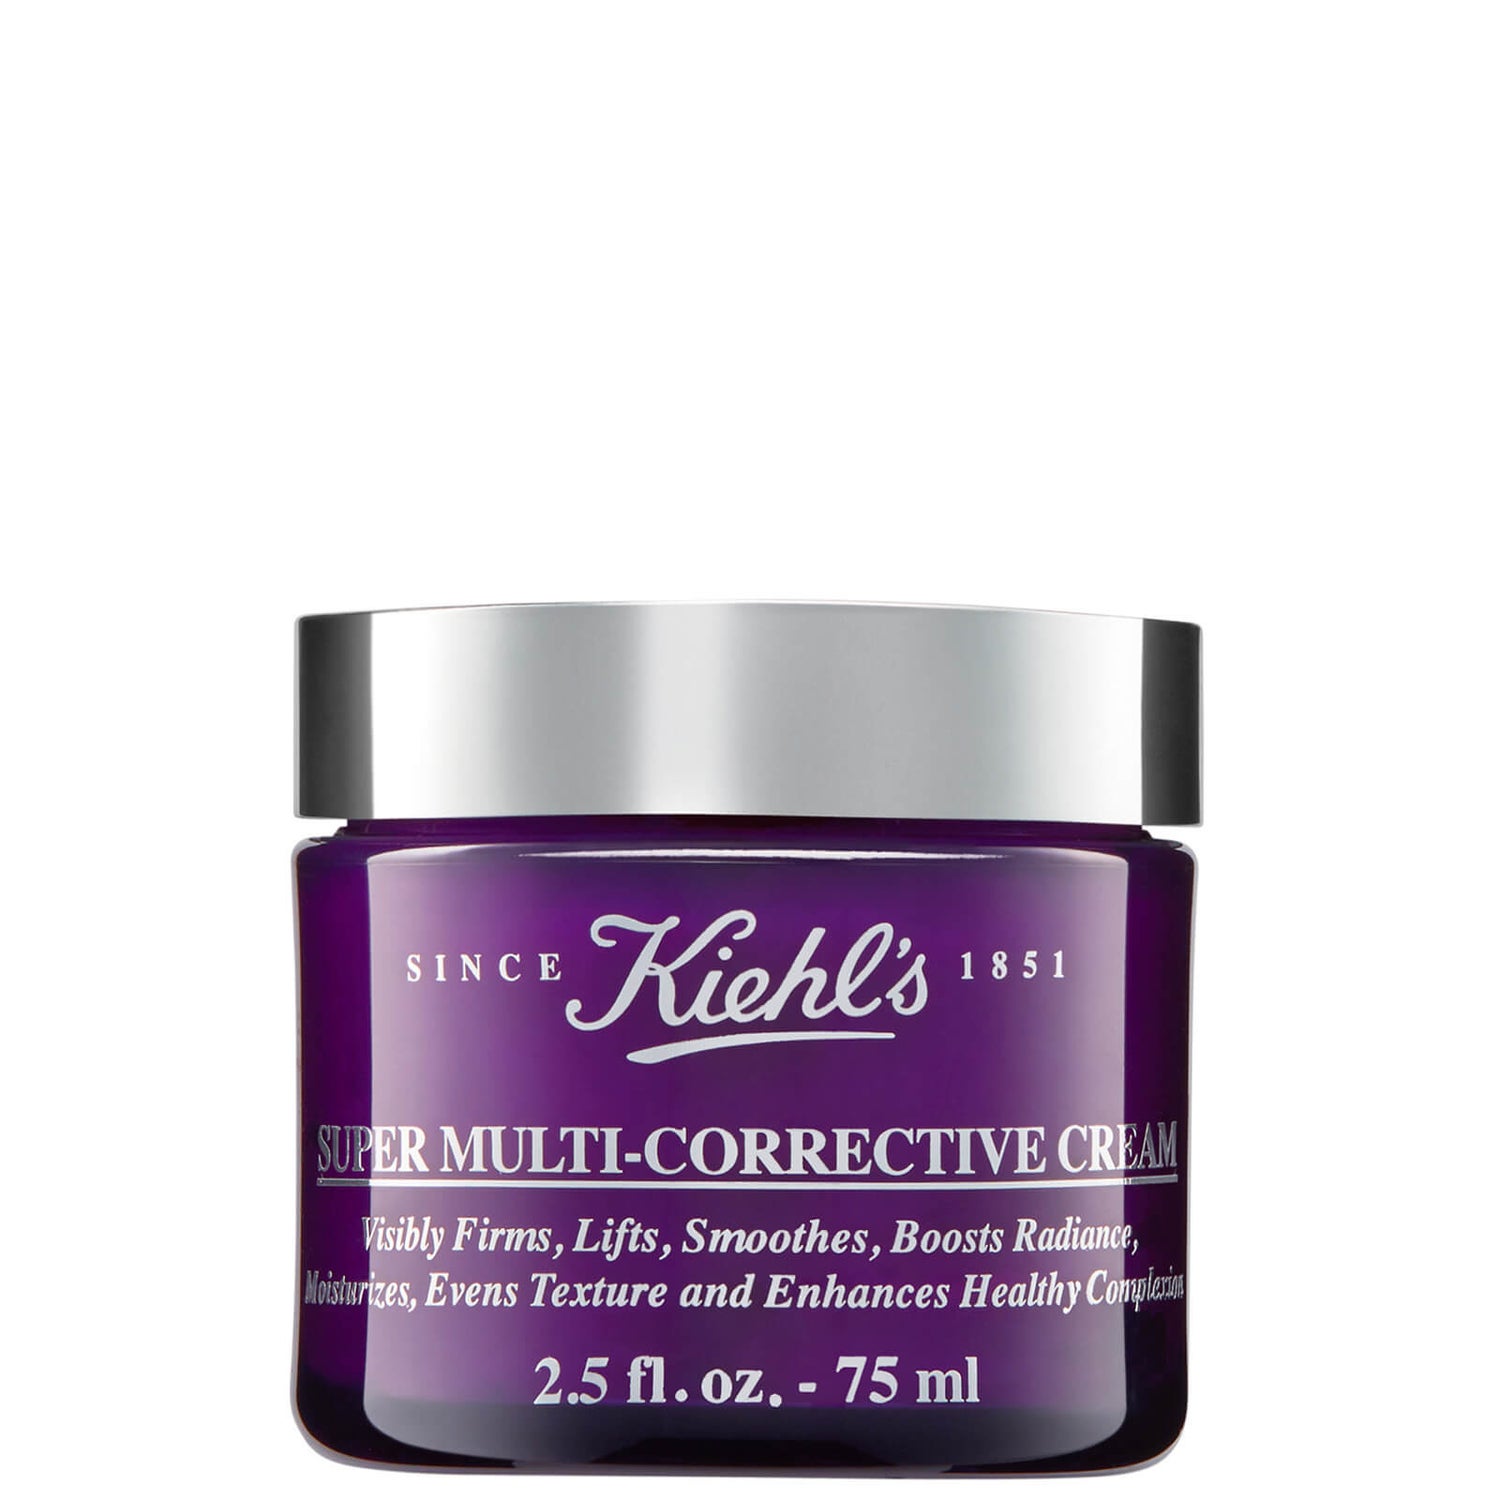 Crema Super Multi-Correctiva de Kiehl's (Varios Tamaños)